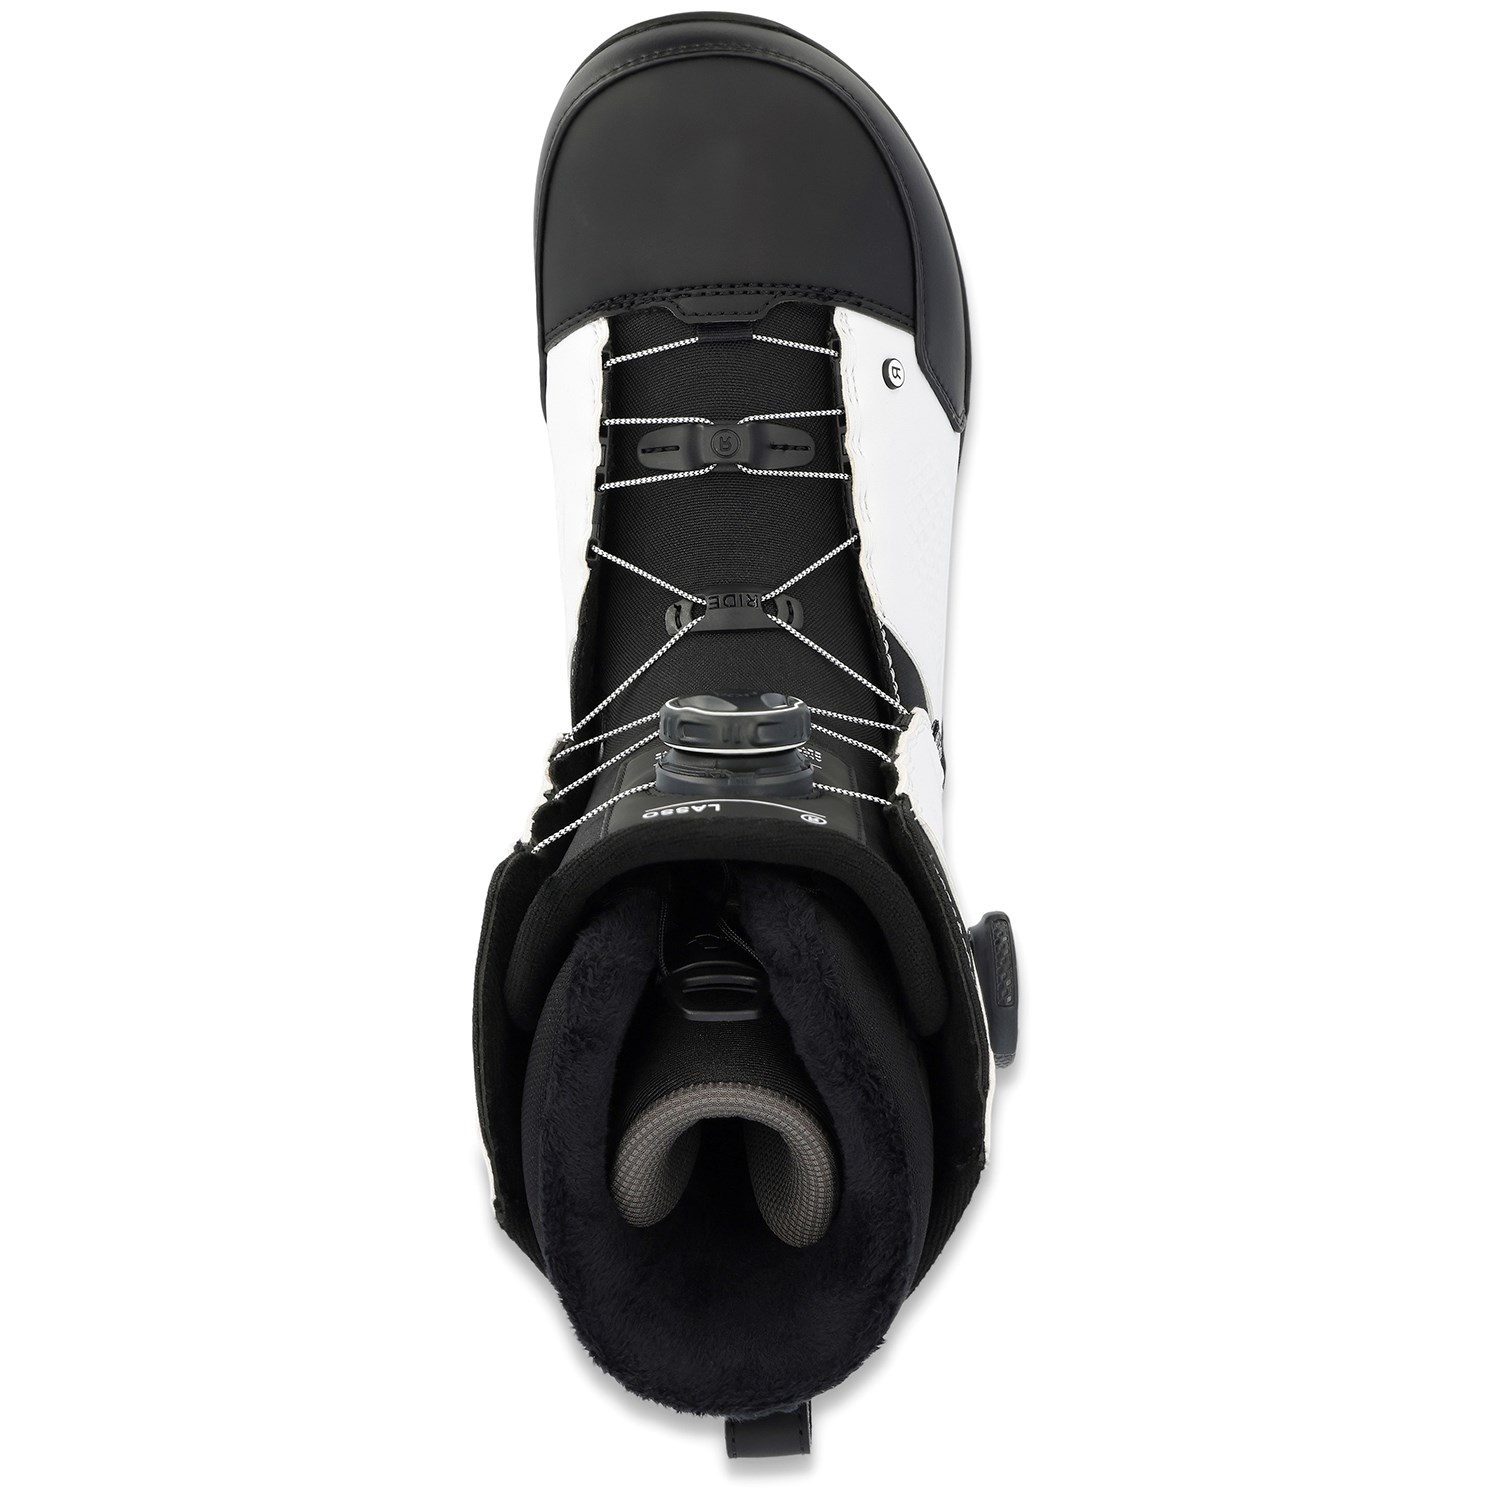 Ride Lasso Boa Snowboard Boots 2023 | evo